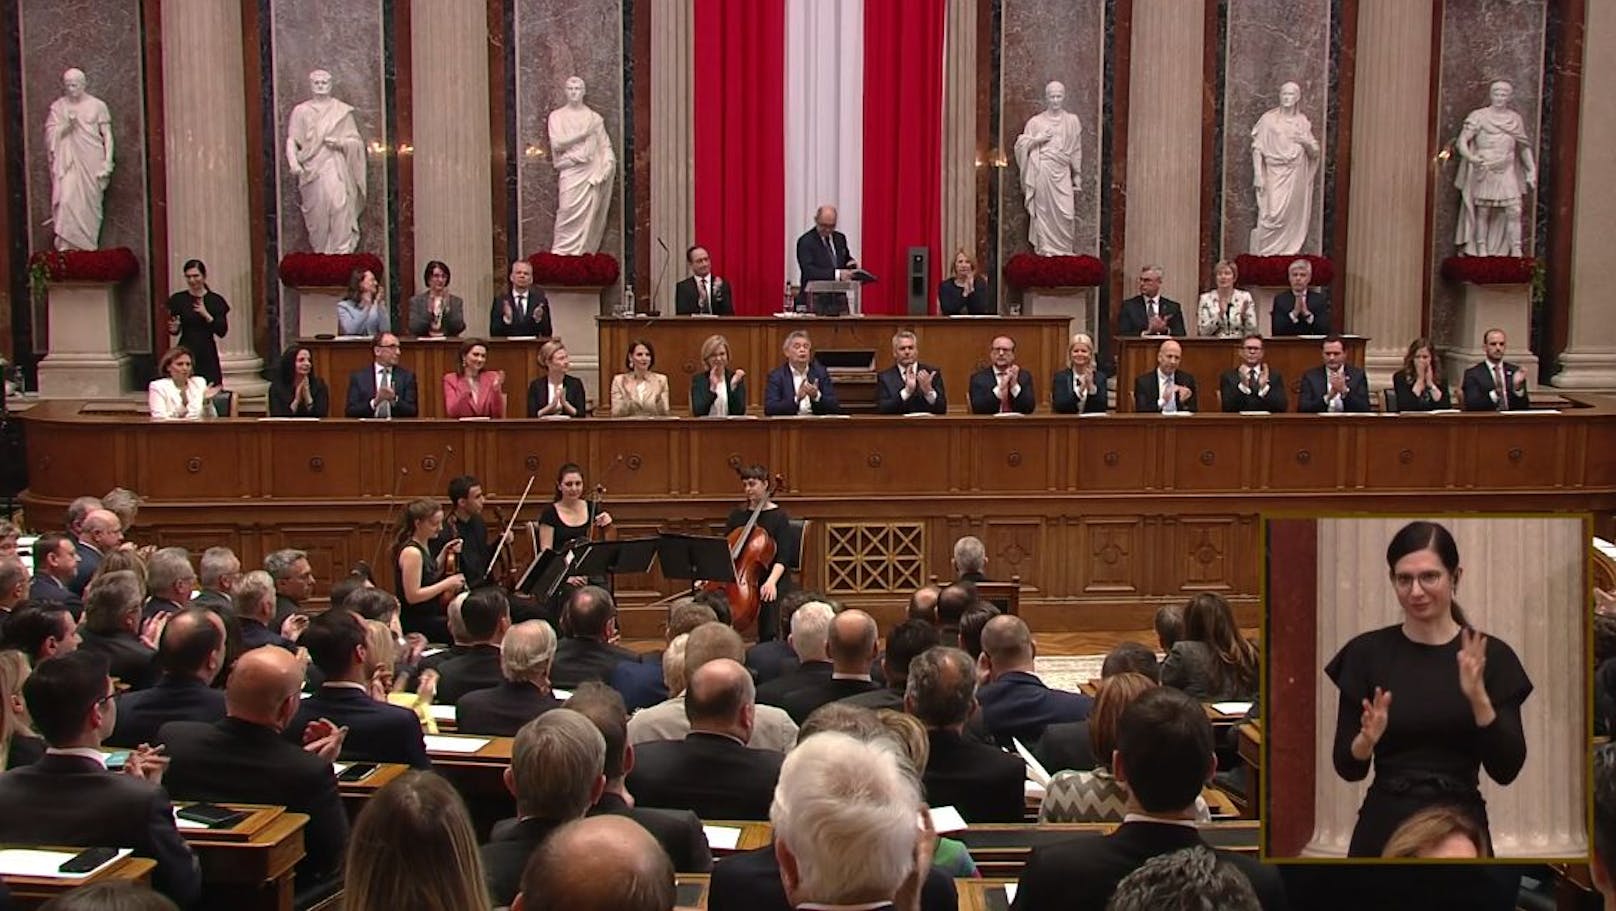 Als der Applaus wieder abgeschwollen war, wollte der Niederösterreicher mit einem Faible für klassische Musik das Wort an den Präsidenten des Bundesrates übergeben.